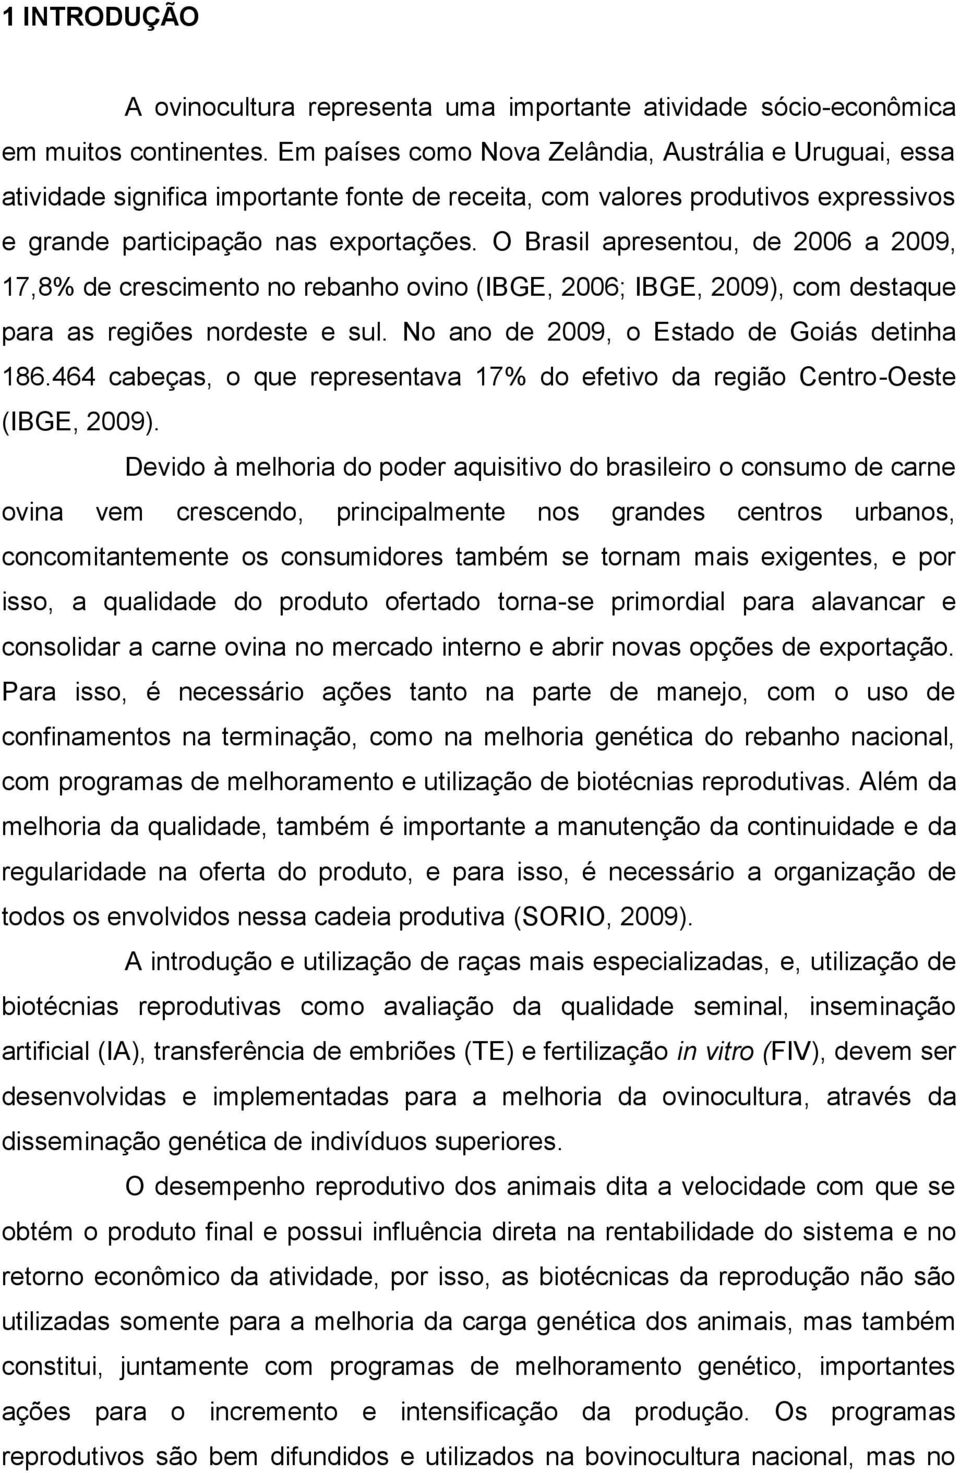 O Brasil apresentou, de 2006 a 2009, 17,8% de crescimento no rebanho ovino (IBGE, 2006; IBGE, 2009), com destaque para as regiões nordeste e sul. No ano de 2009, o Estado de Goiás detinha 186.